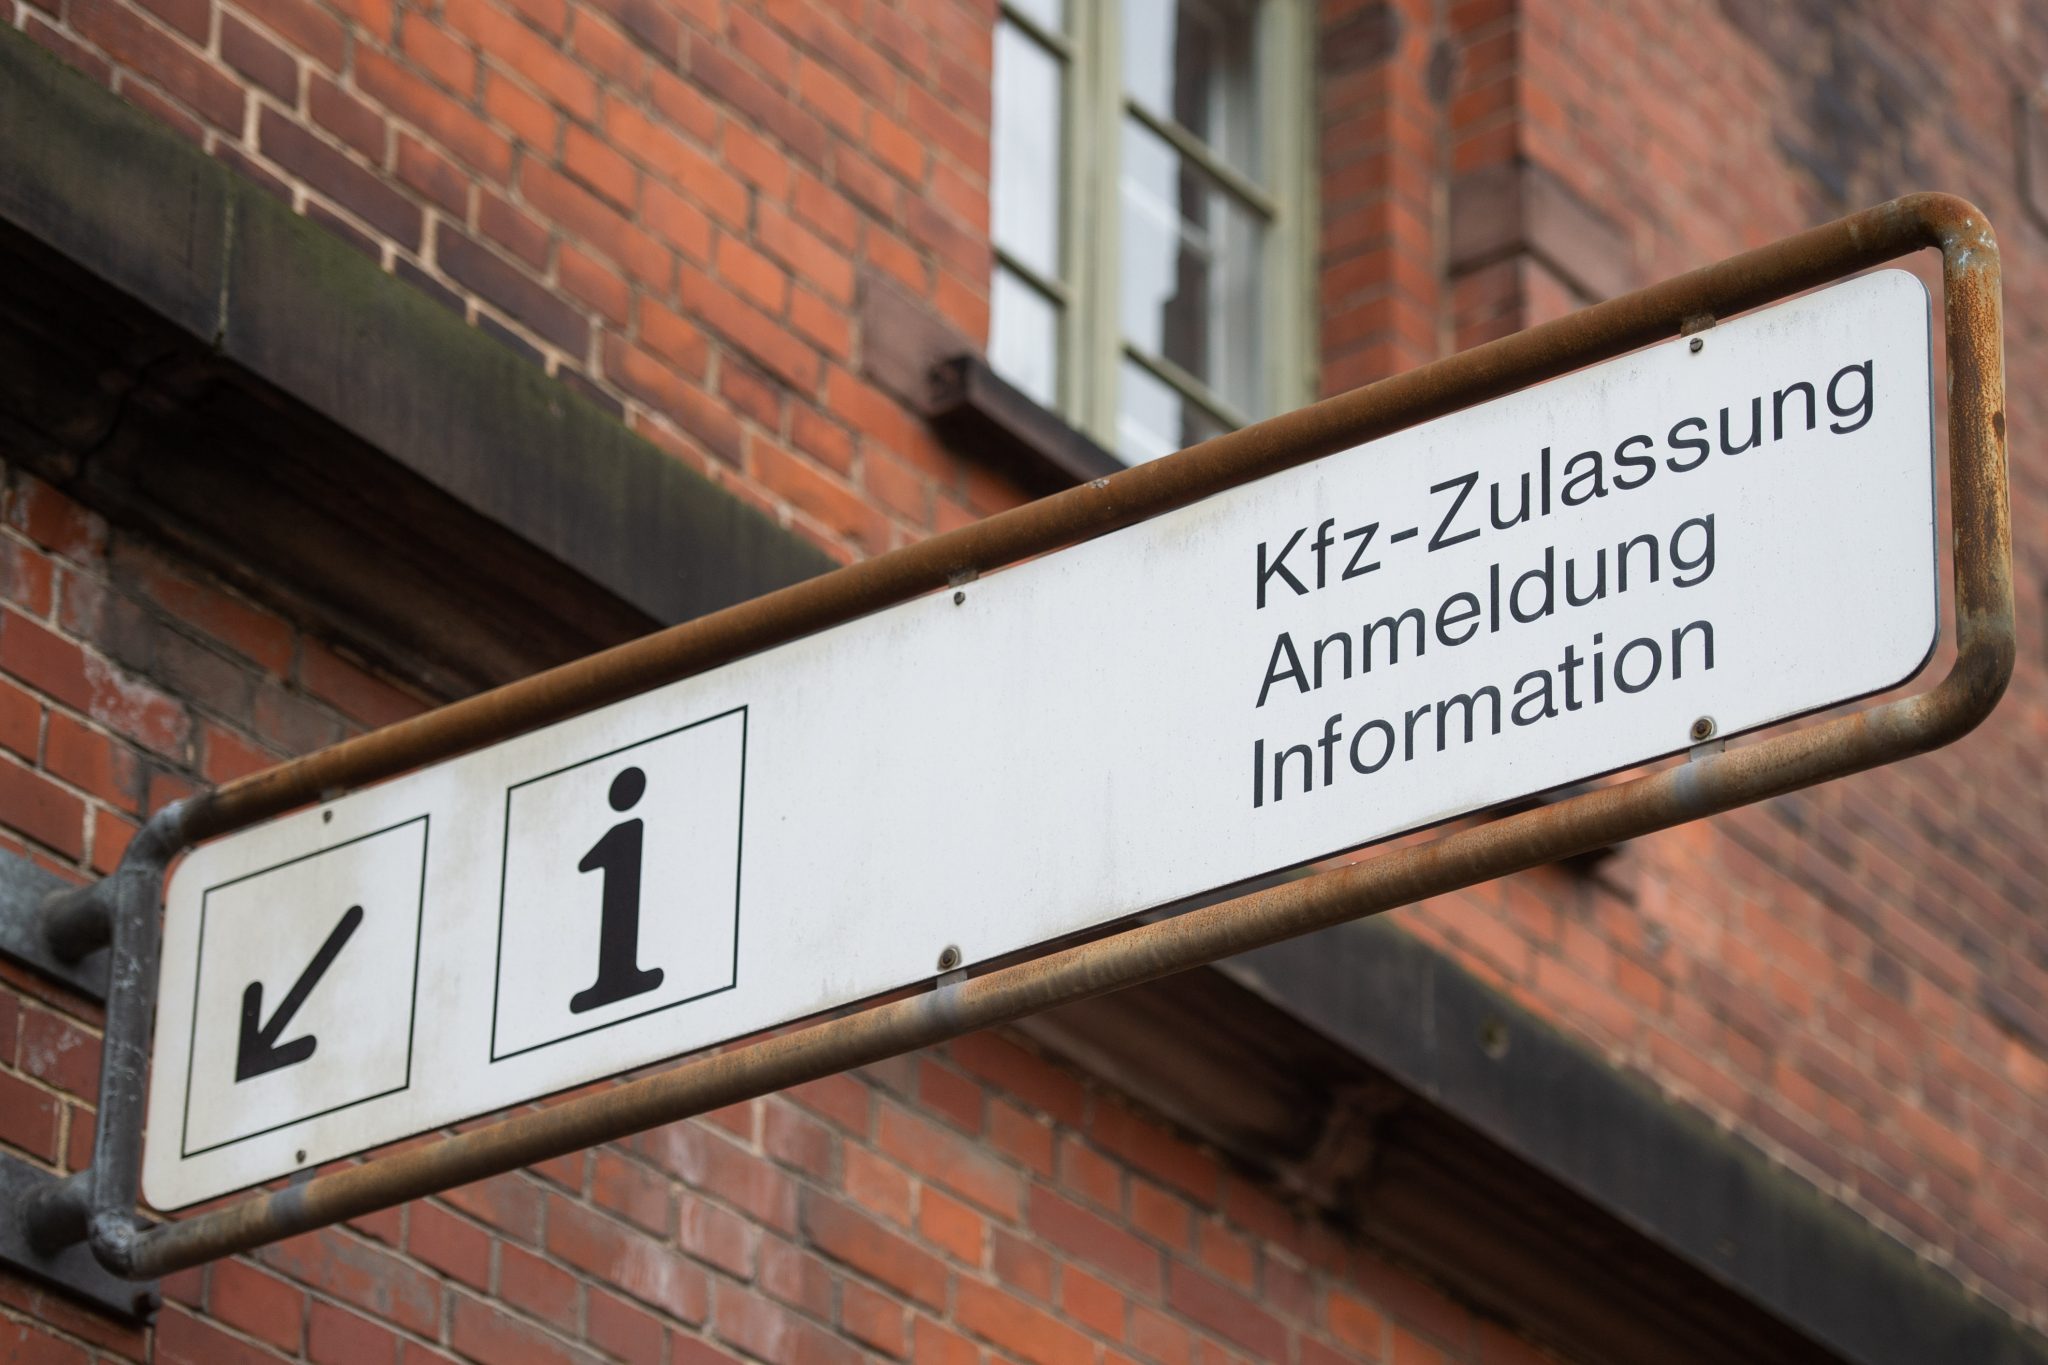 KFZ-Zulassungsstellen in Niedersachsen sollen keine Nummernschilder mit NS-Bezug mehr vergeben Foto: picture alliance / dpa Themendienst | Arne Immanuel Baensch